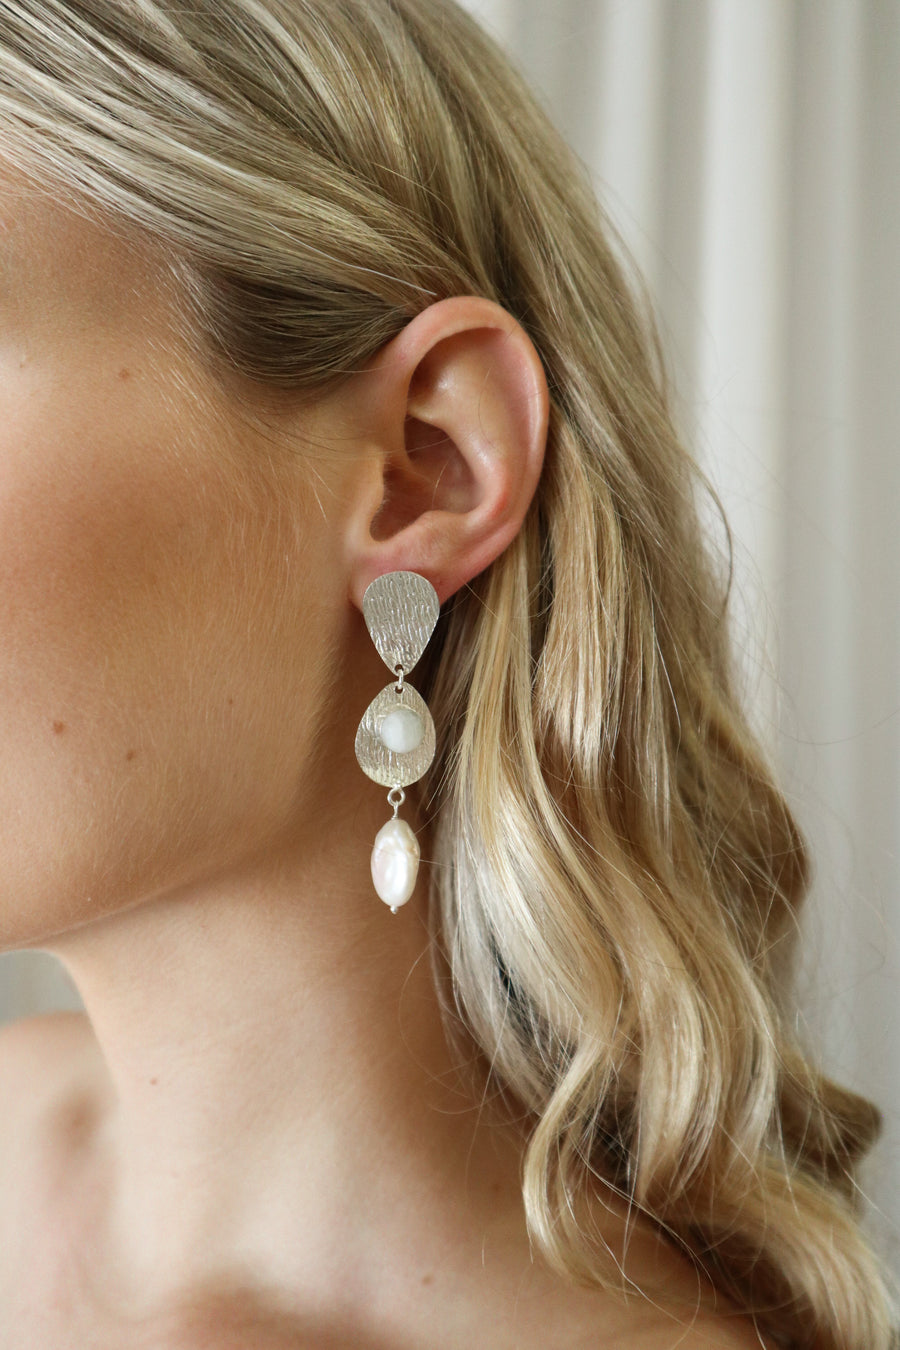 Cute Silver earrings